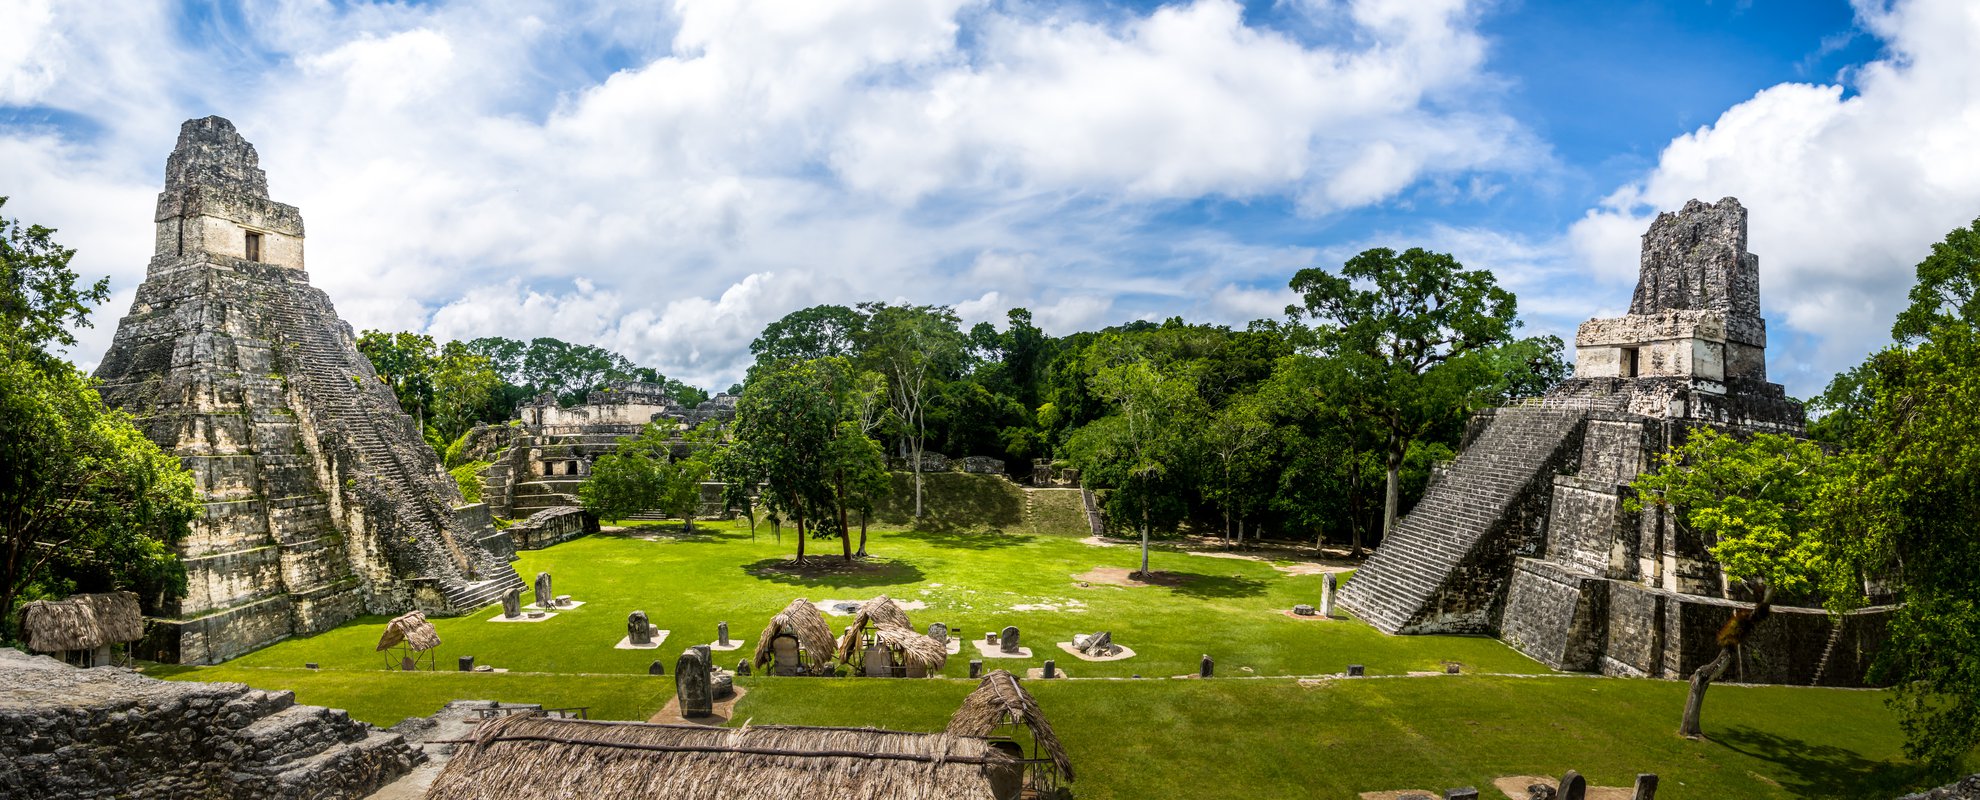 Tikal, mayastaden i djungeln